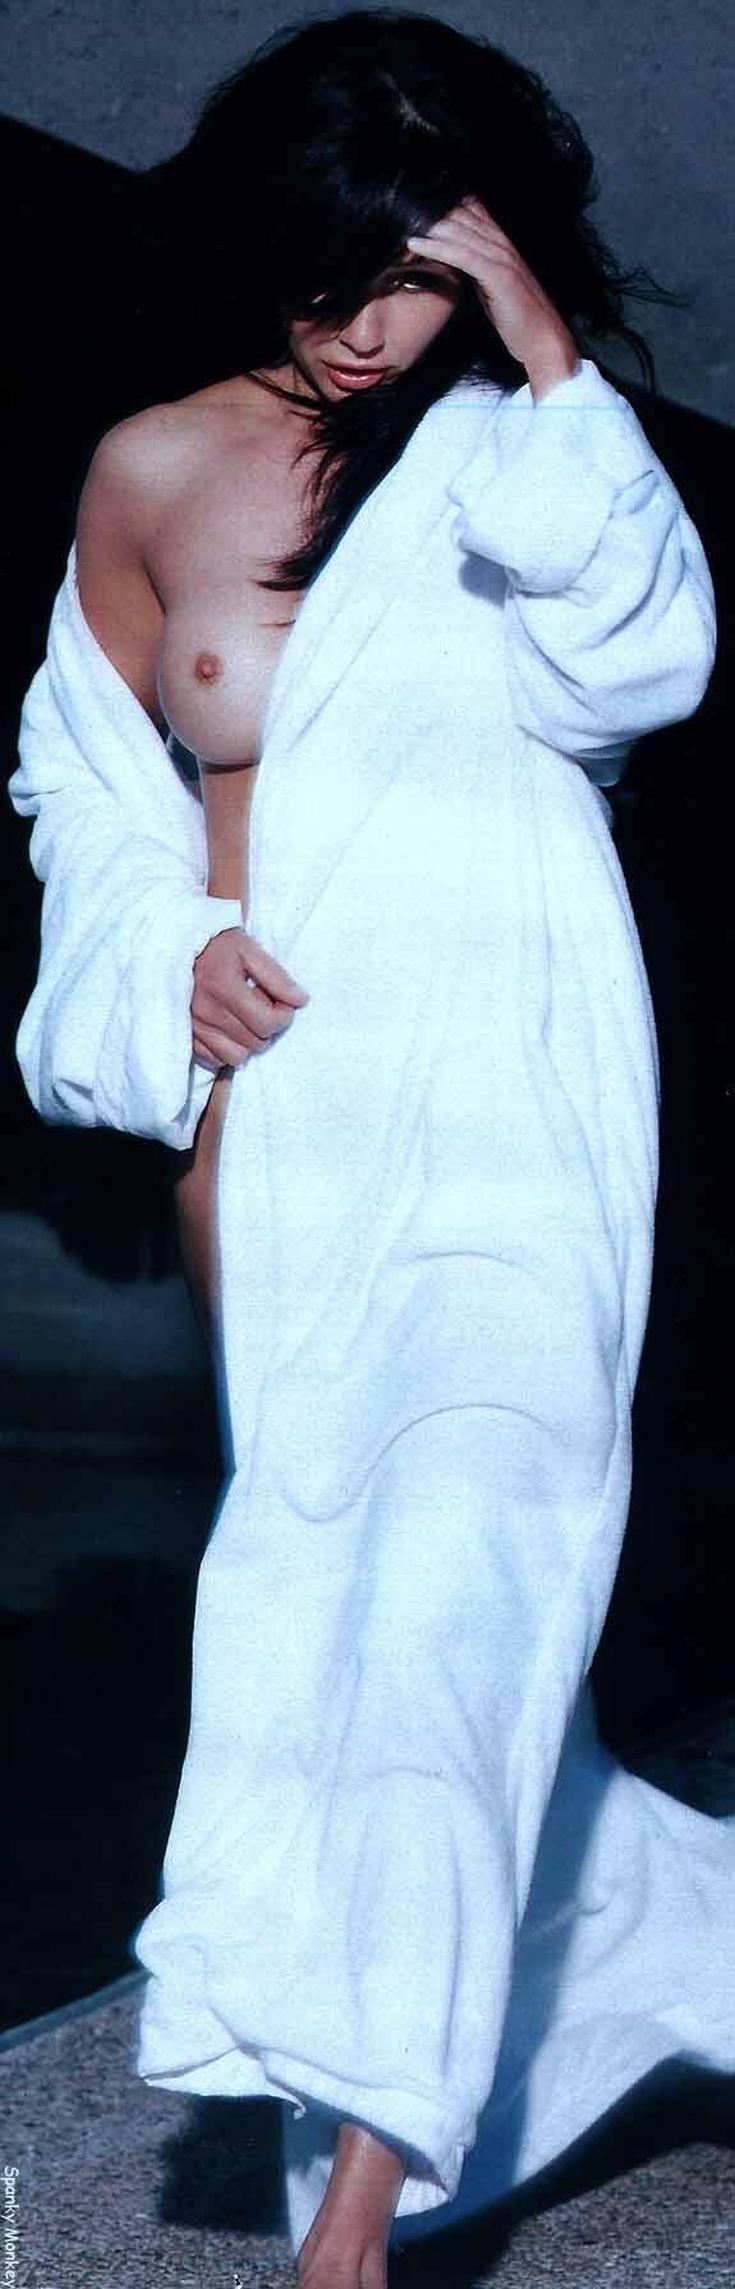 Слив фото американская актриса Шеннен Доэрти википедия горячие интим фото